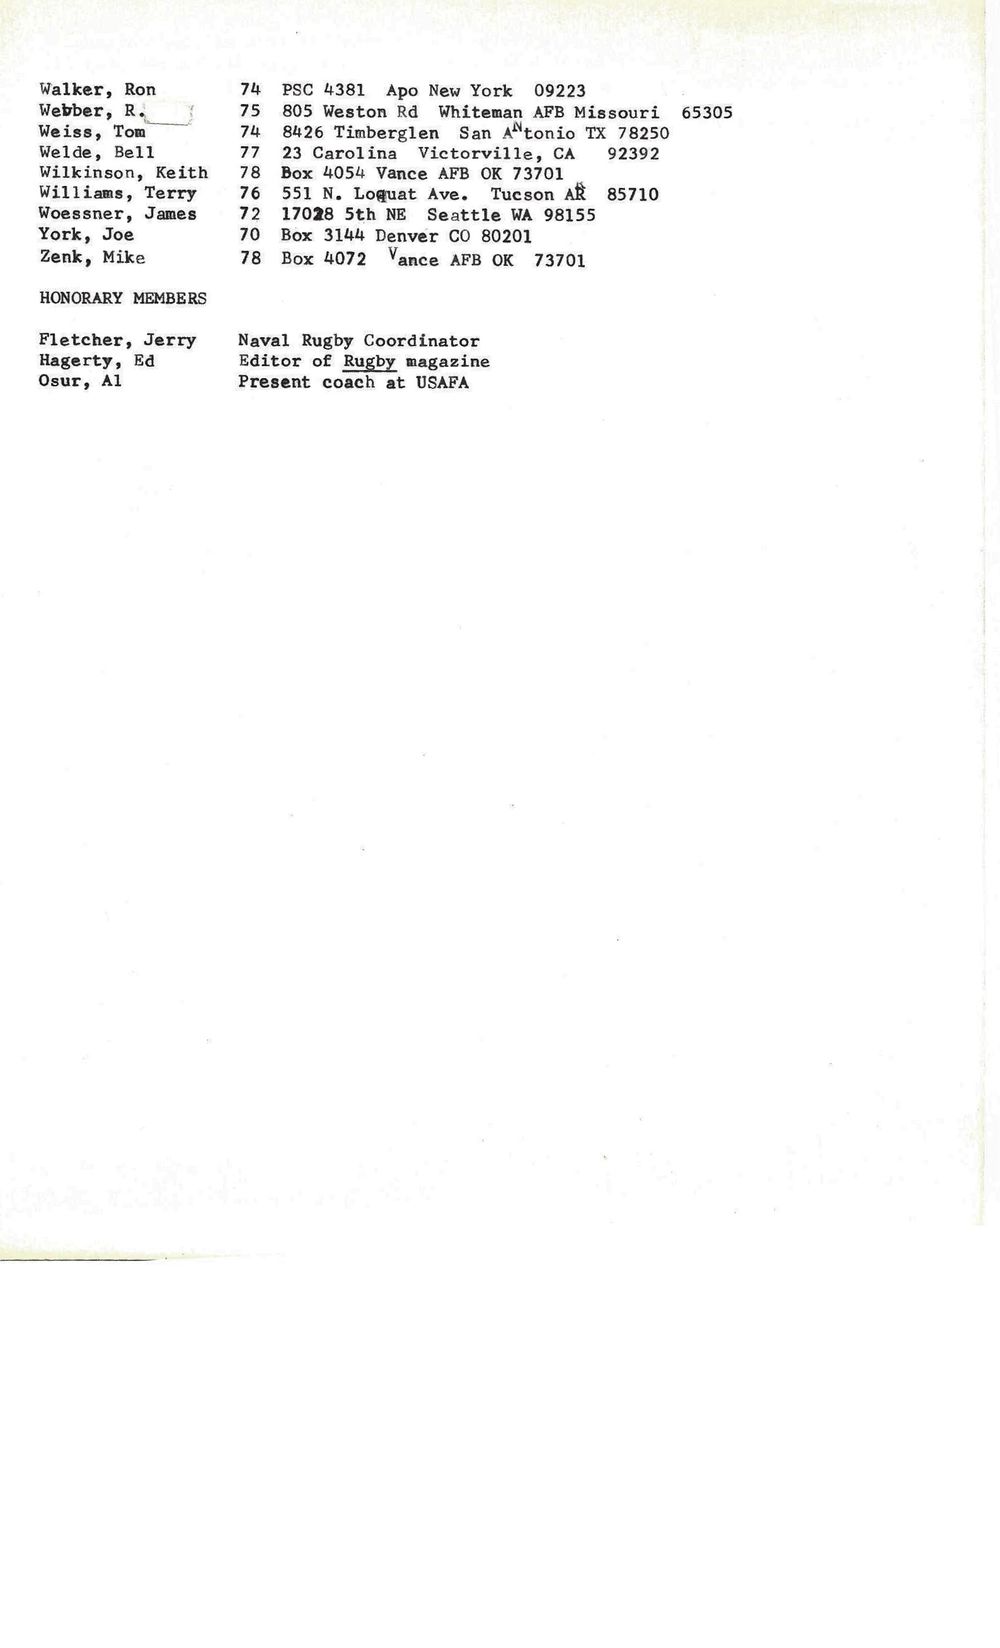 1979 08 Newsletter 4.jpg